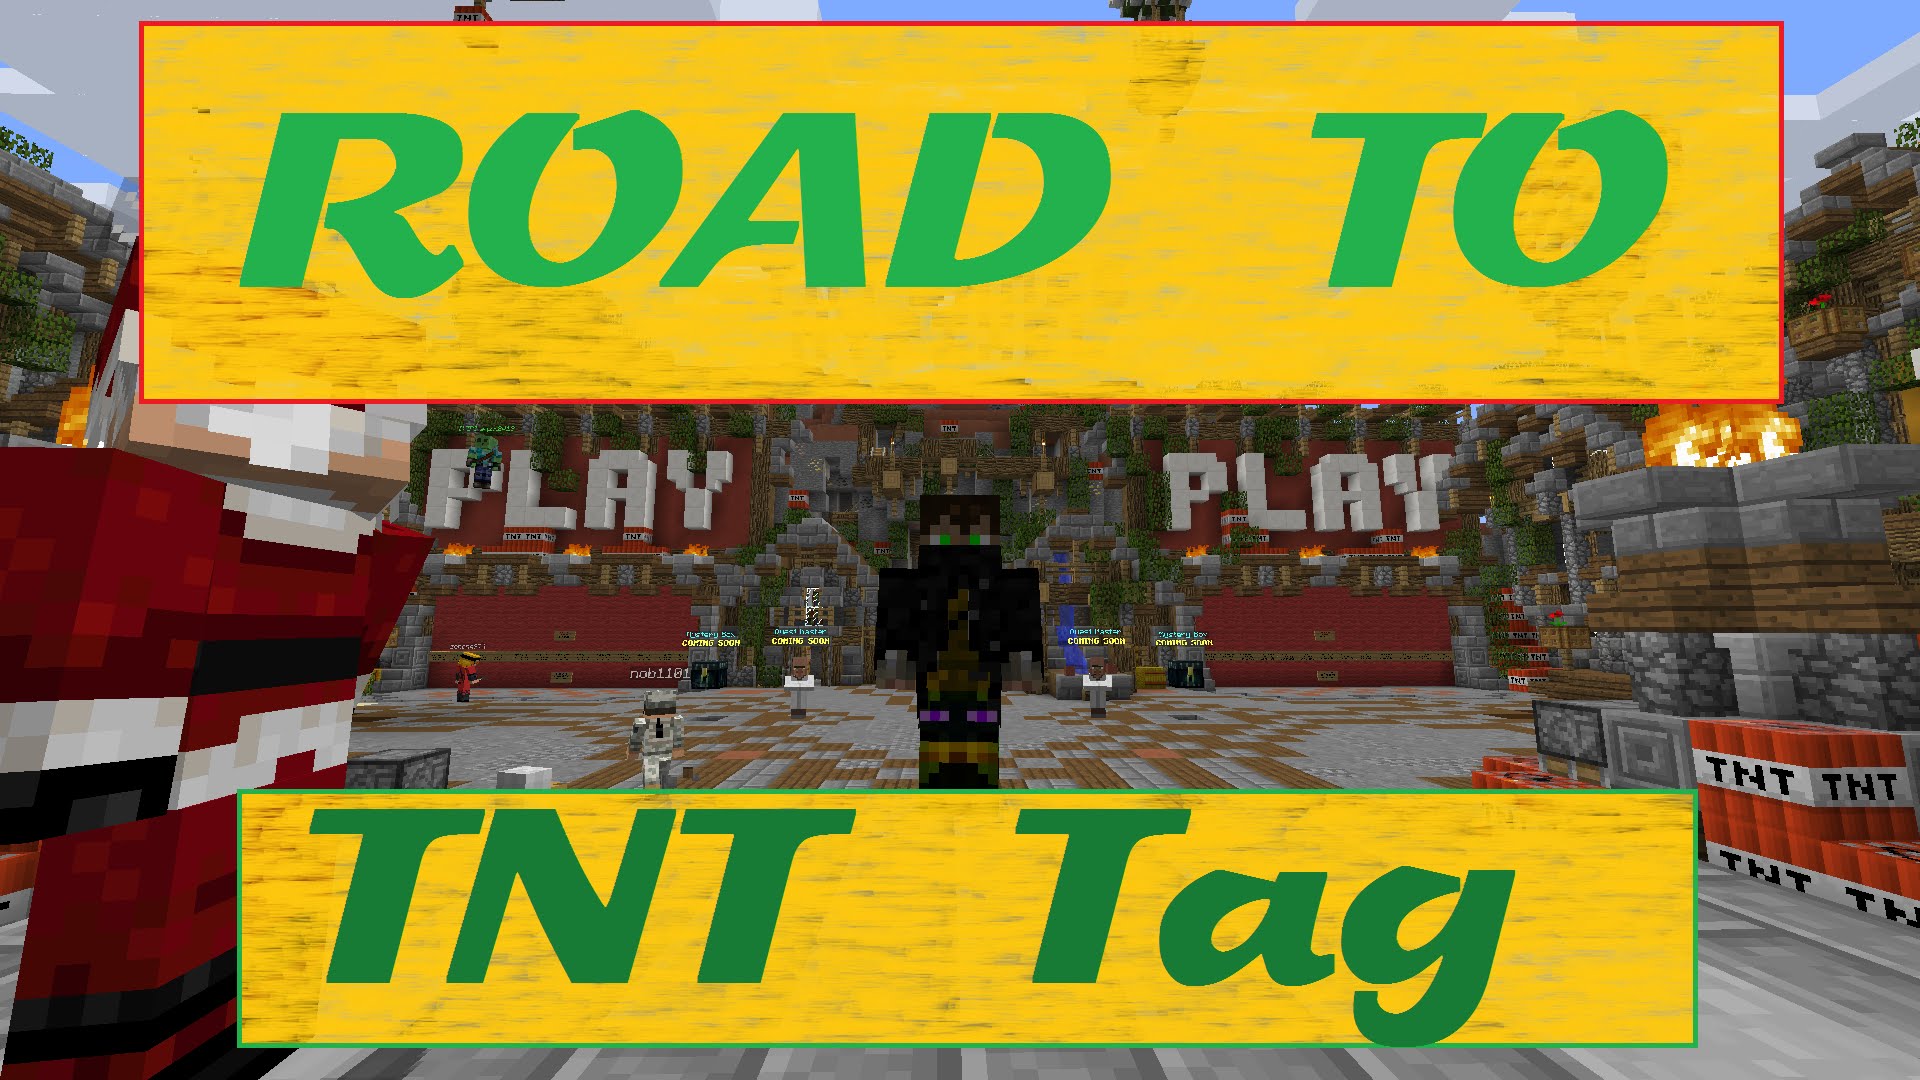 Road to win TNT Tag - Ep. 2 de La mar de llibres